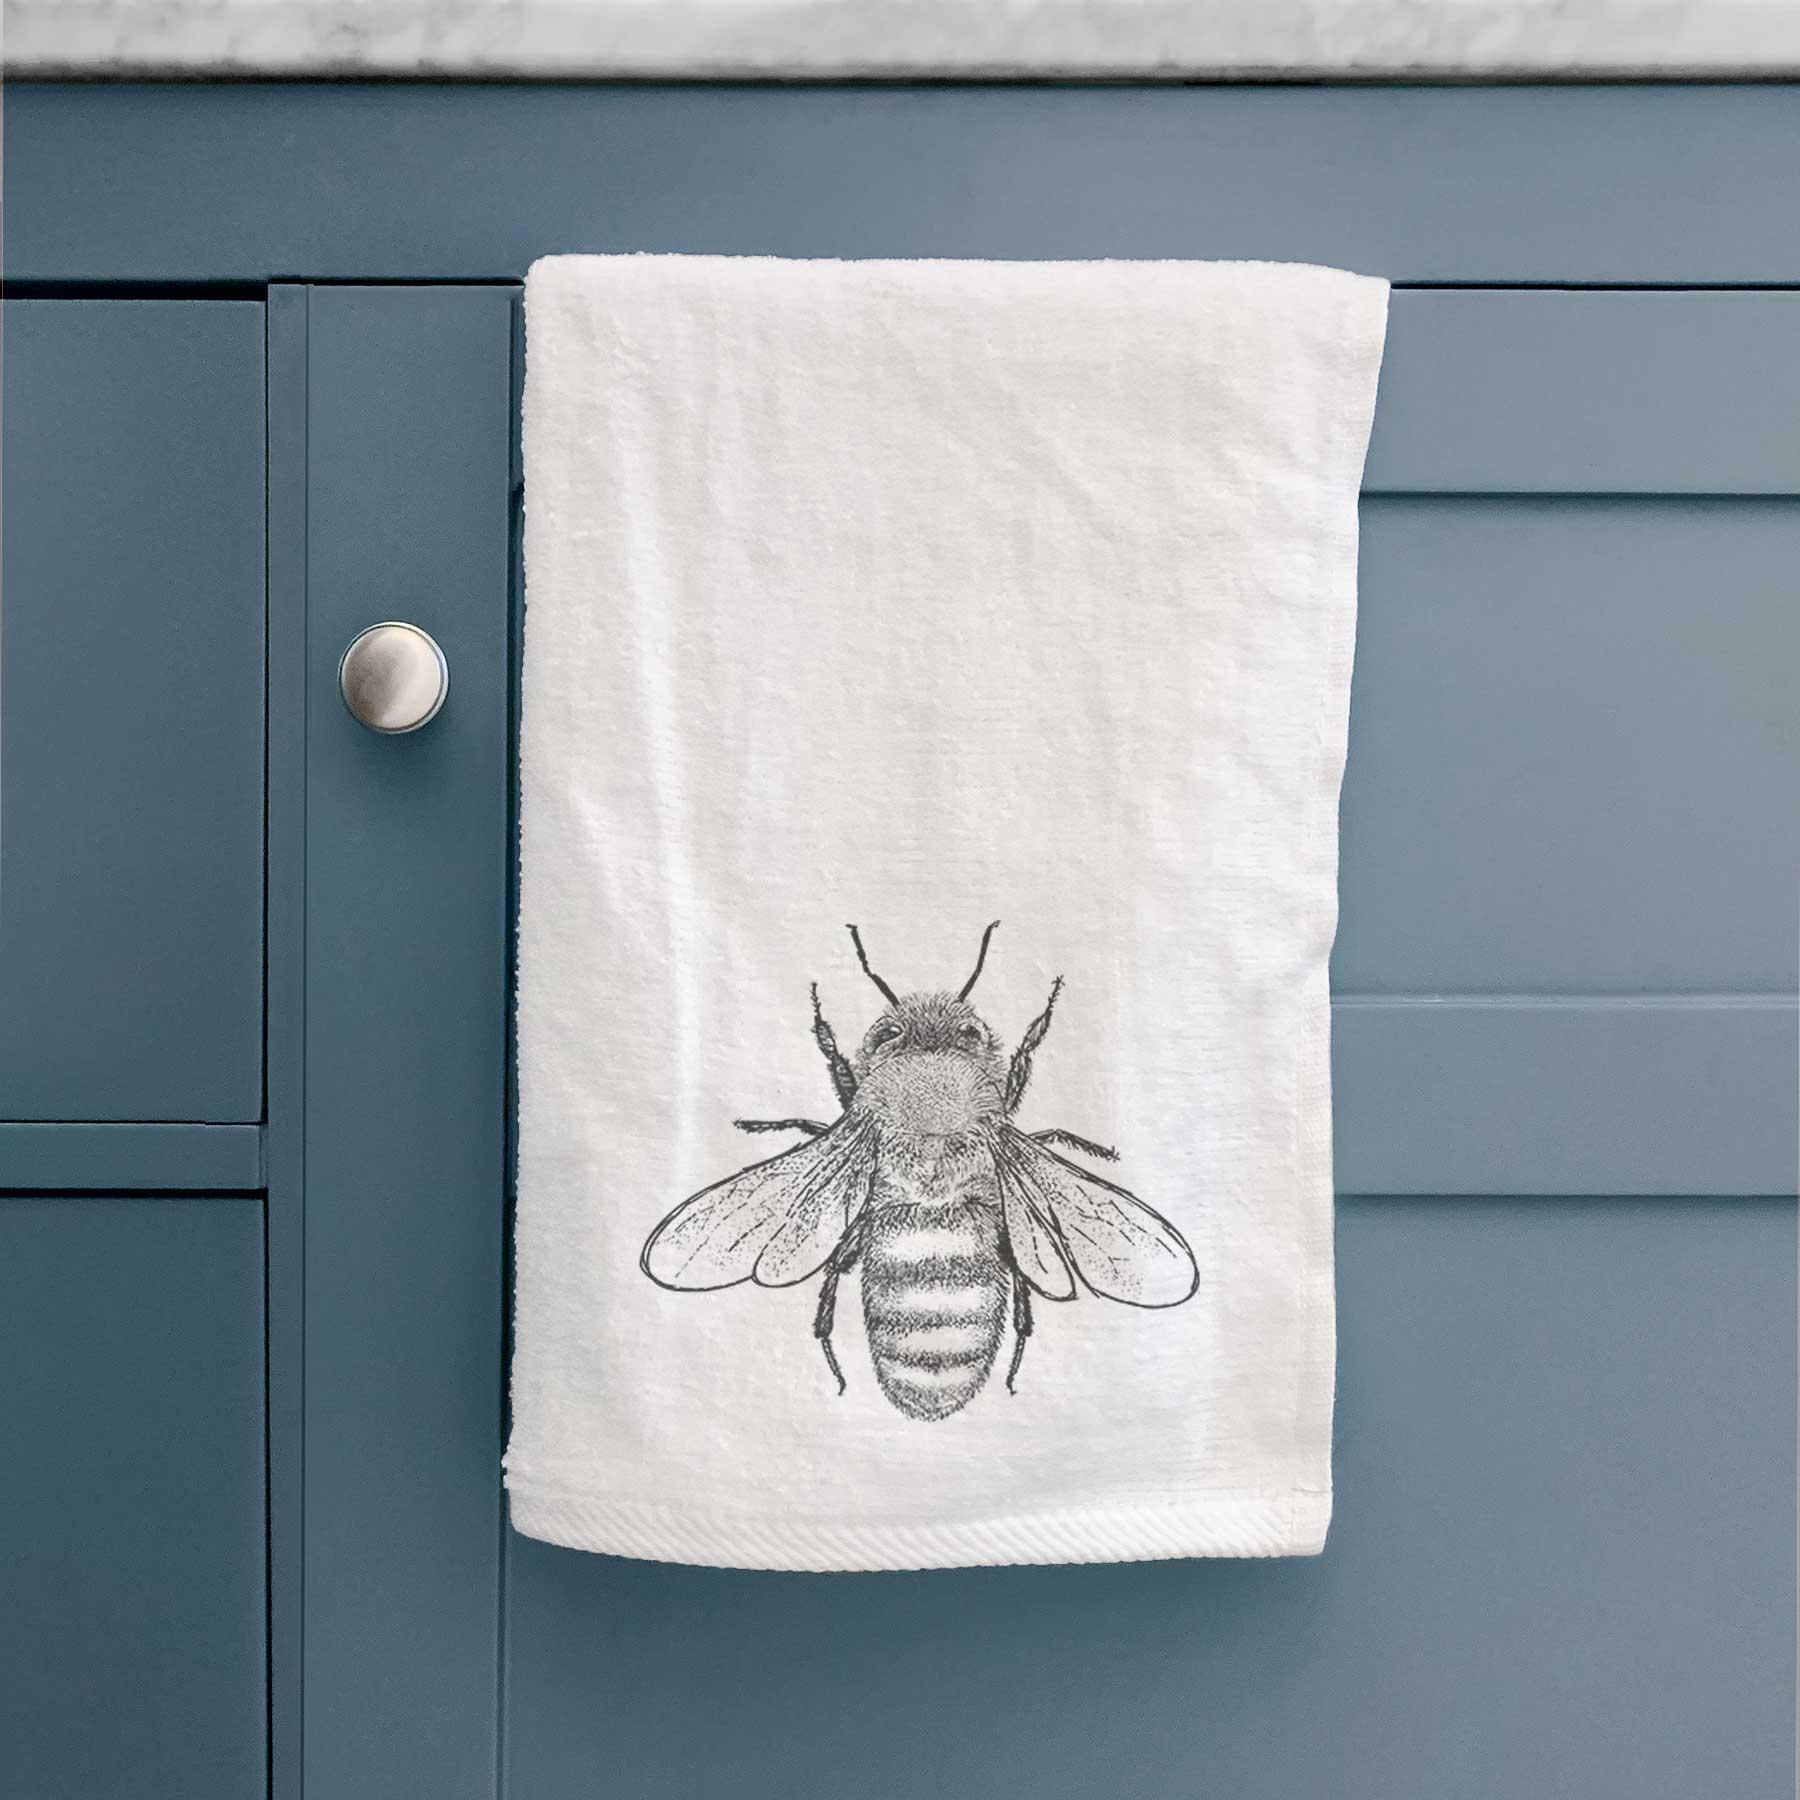 Bee Kind Hand Towel